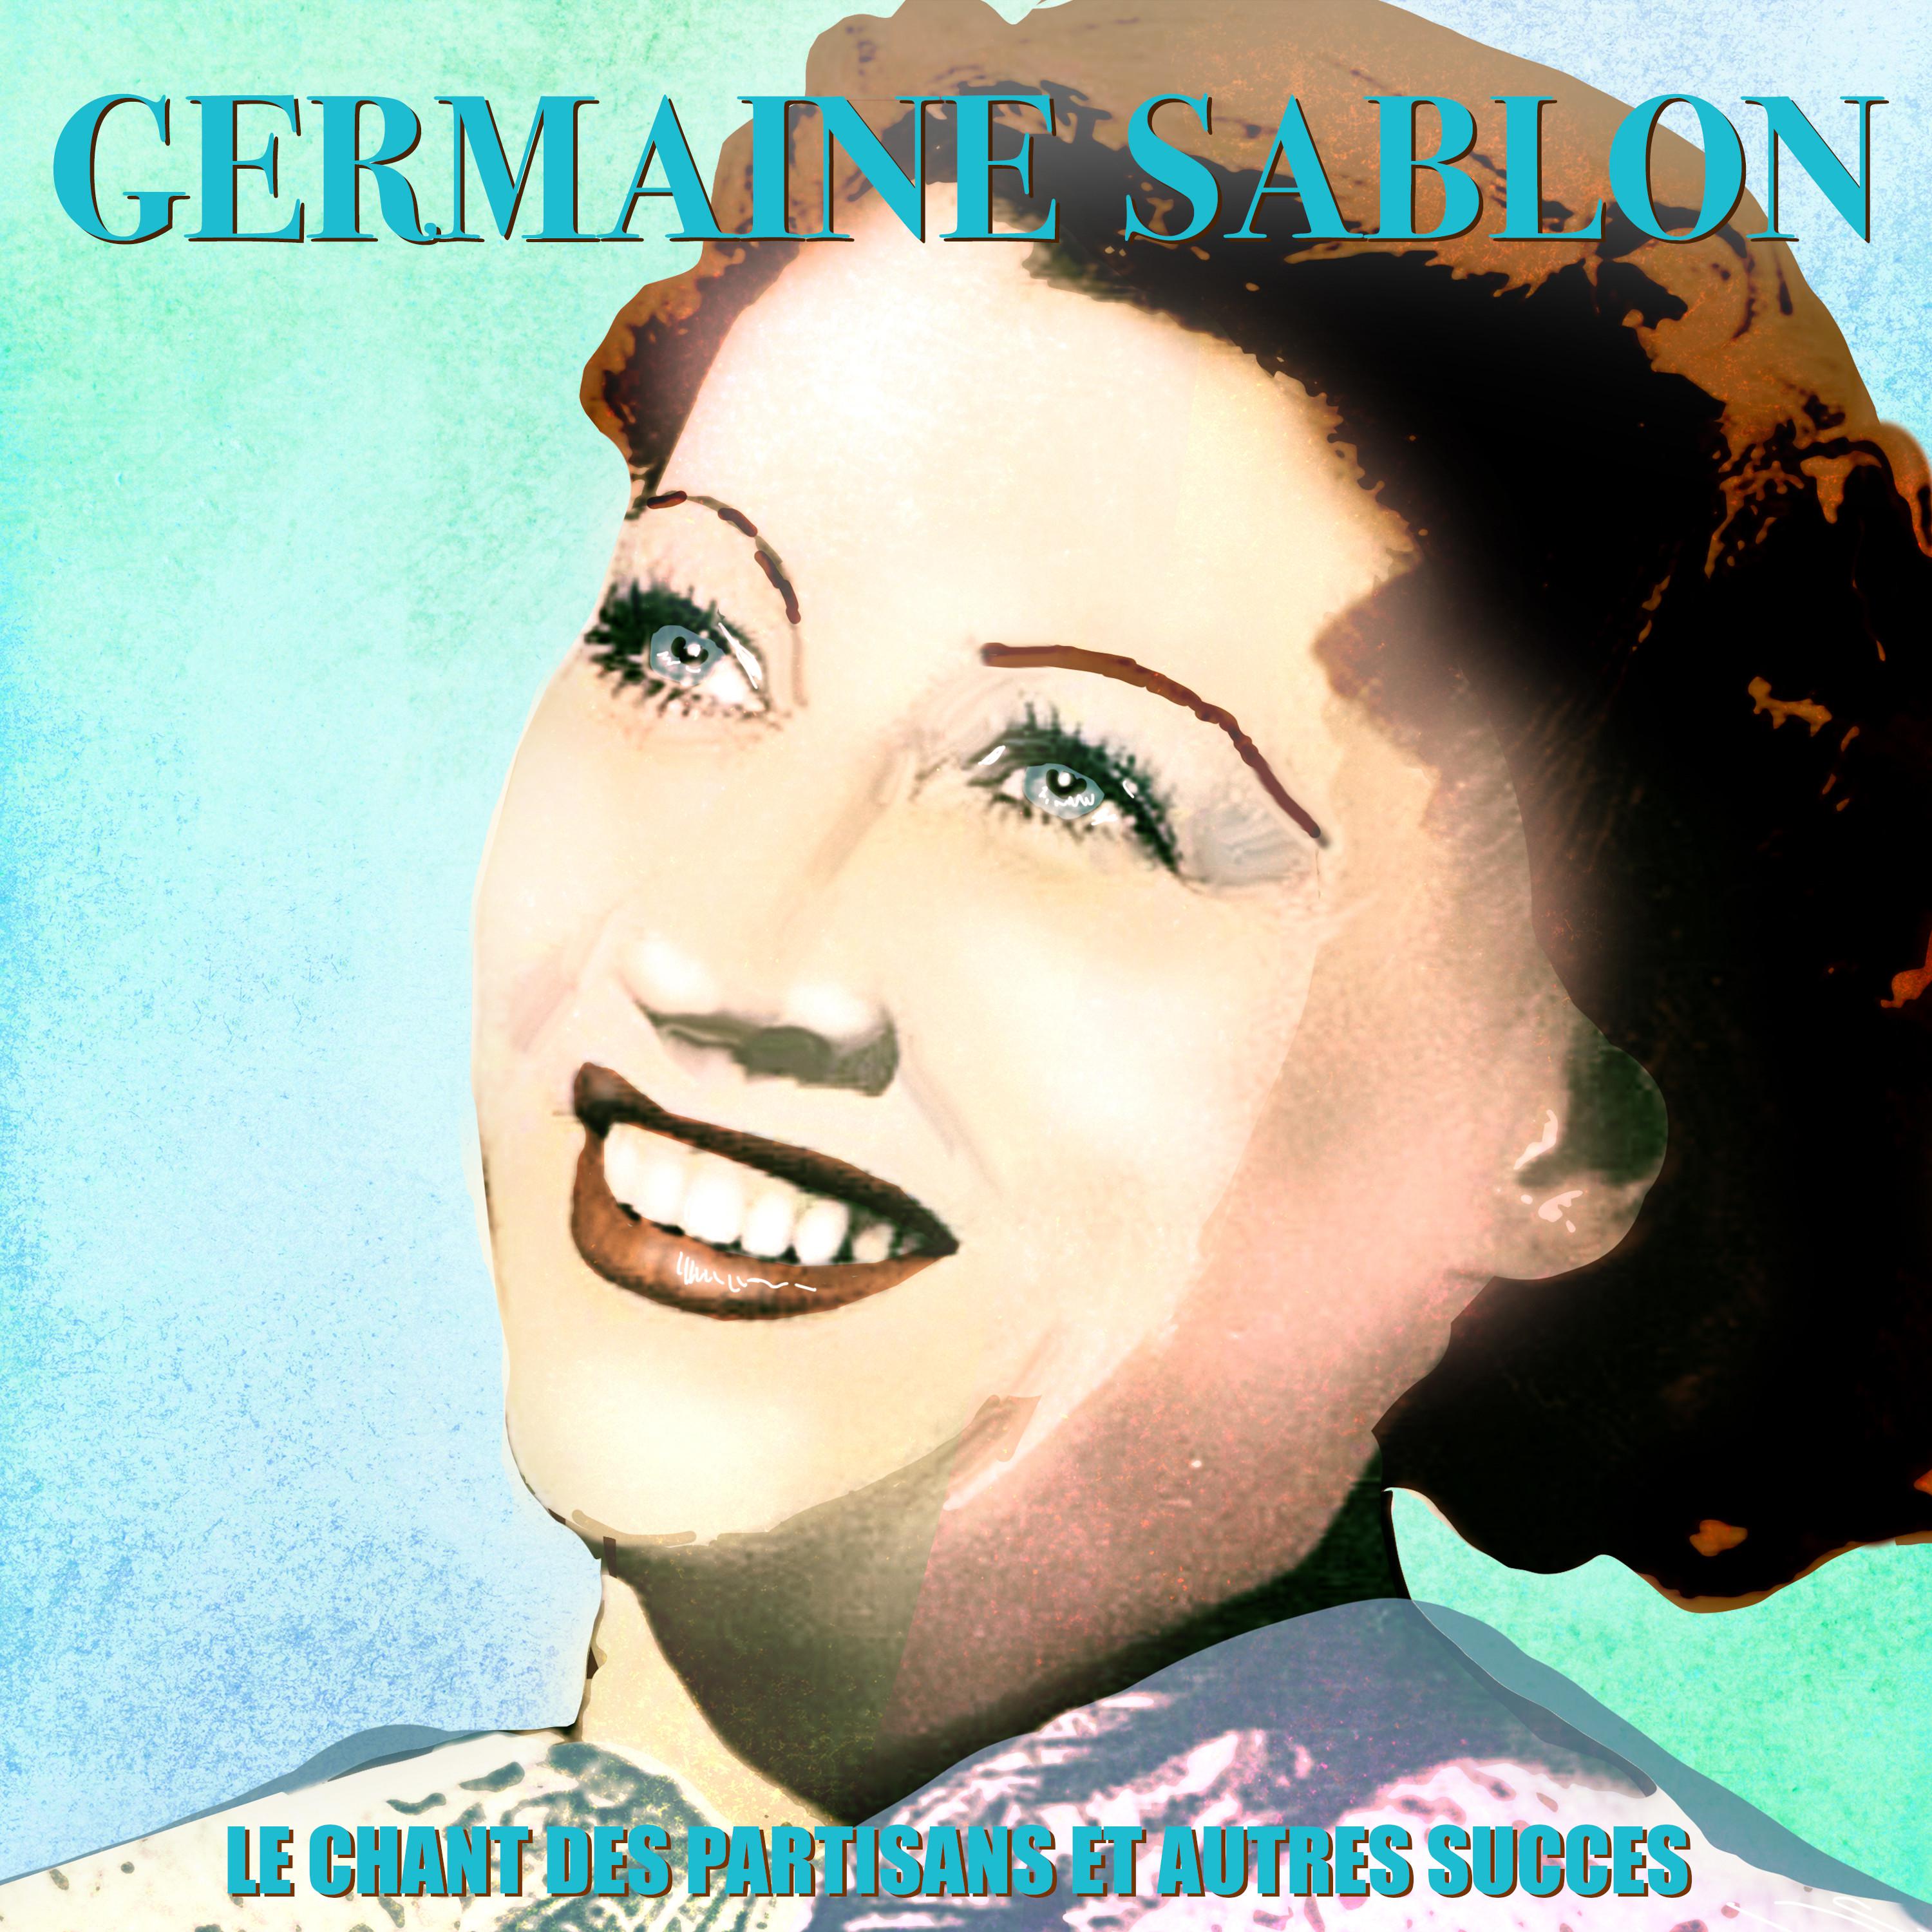 Germaine Sablon - C'est lui que mon coeur a choisi